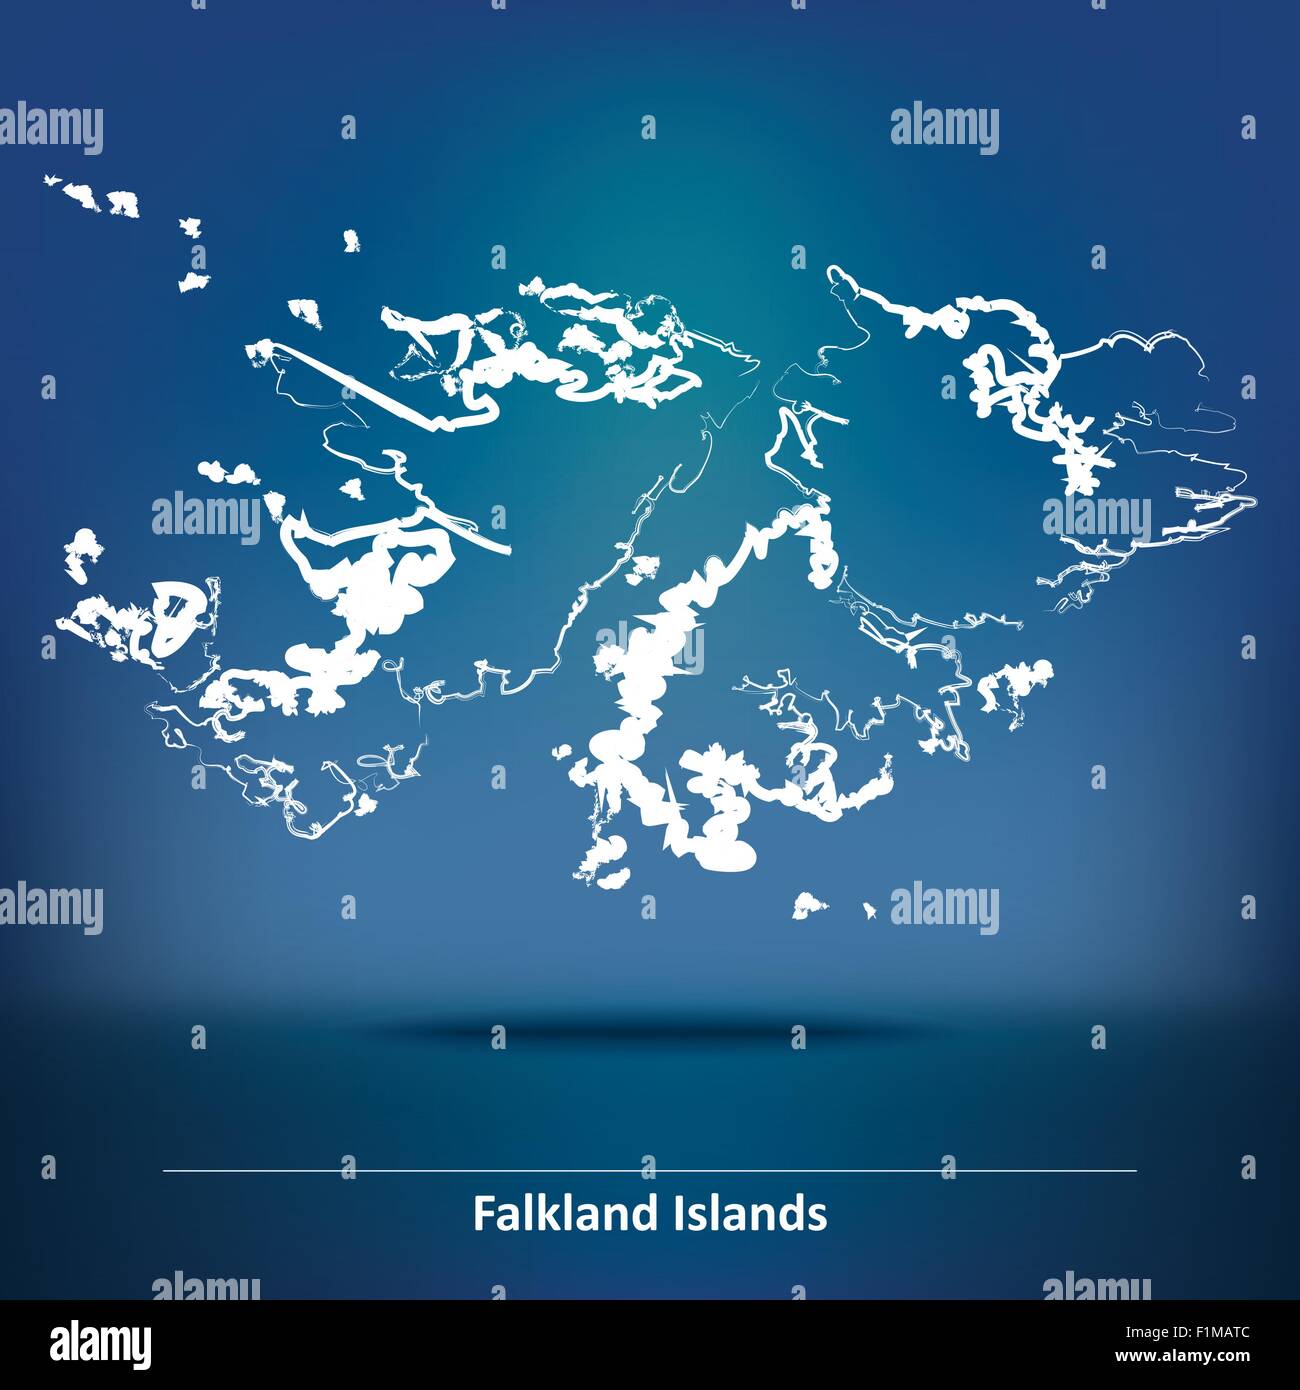 Karte der Falkland-Inseln - Vektor-Illustration Doodle Stock Vektor